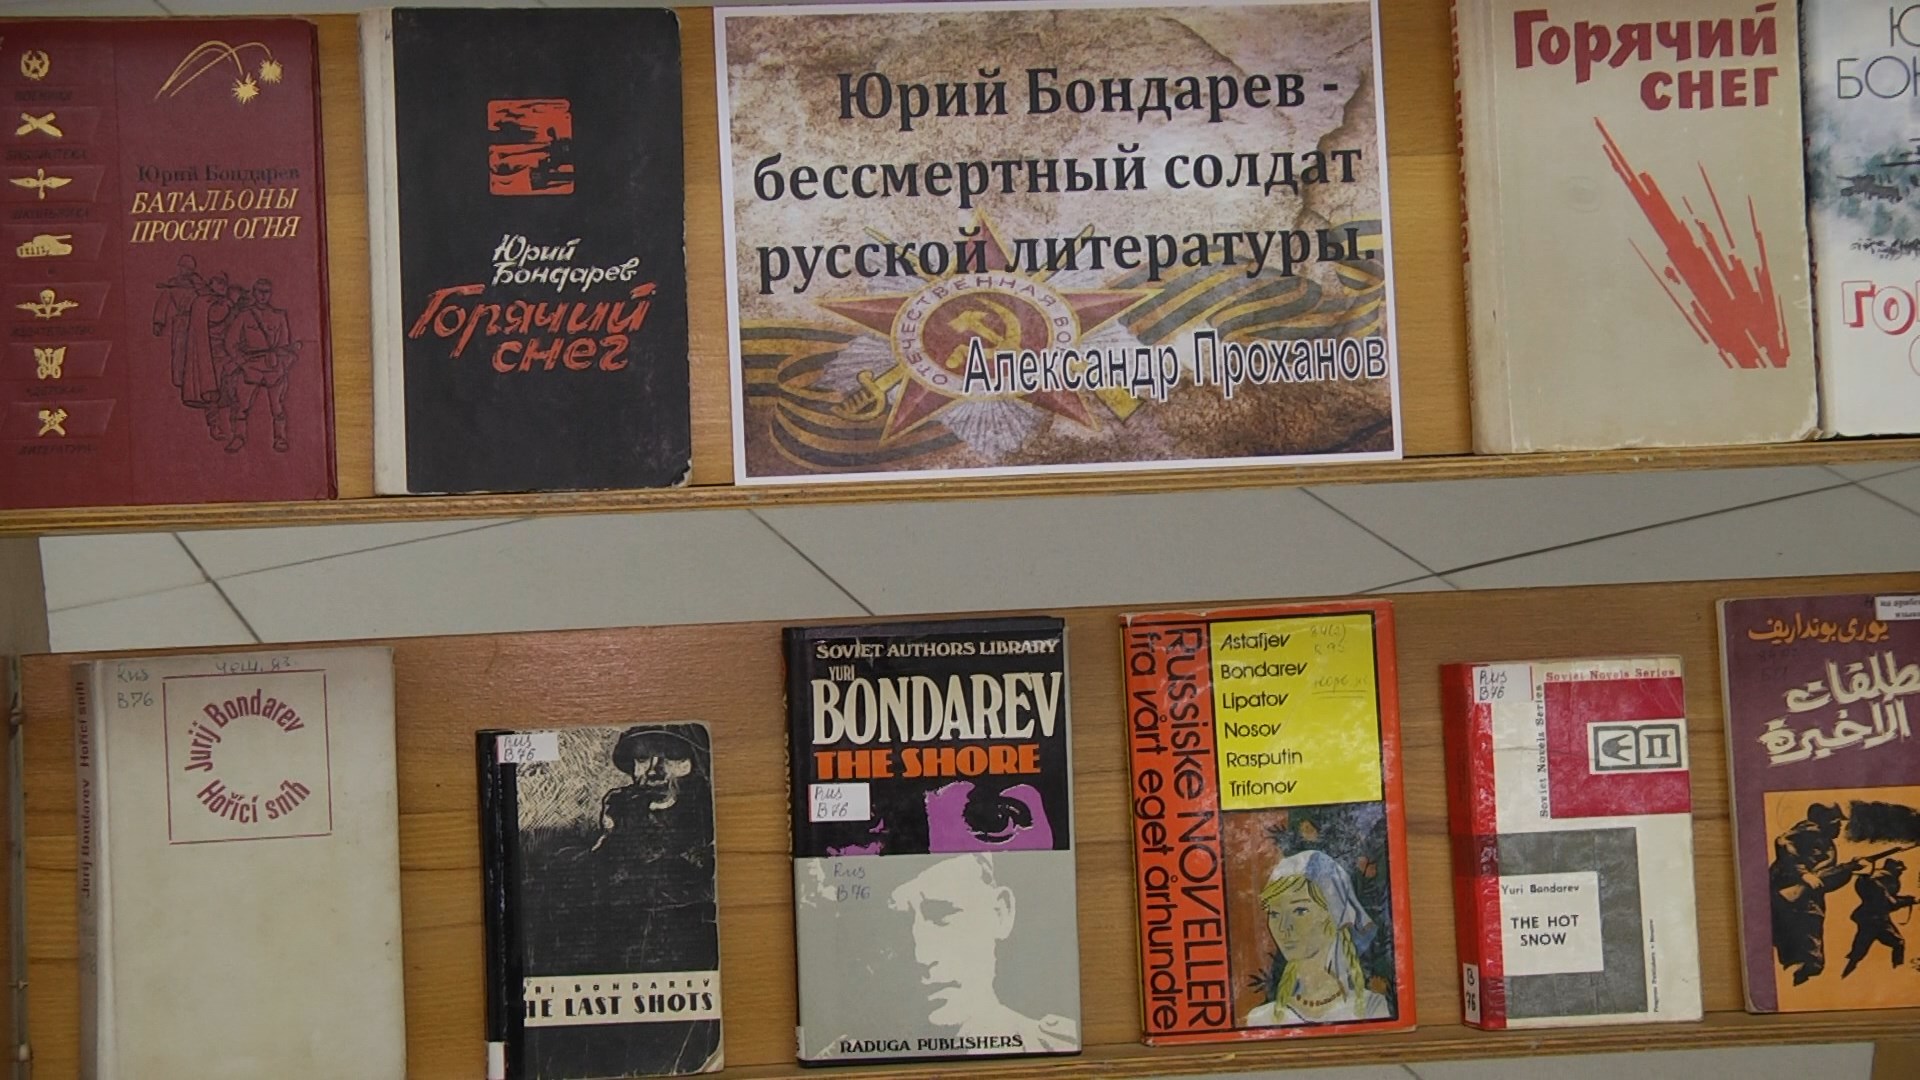 В Волгограде отметили столетие автора «Горячего снега» Юрия Бондарева